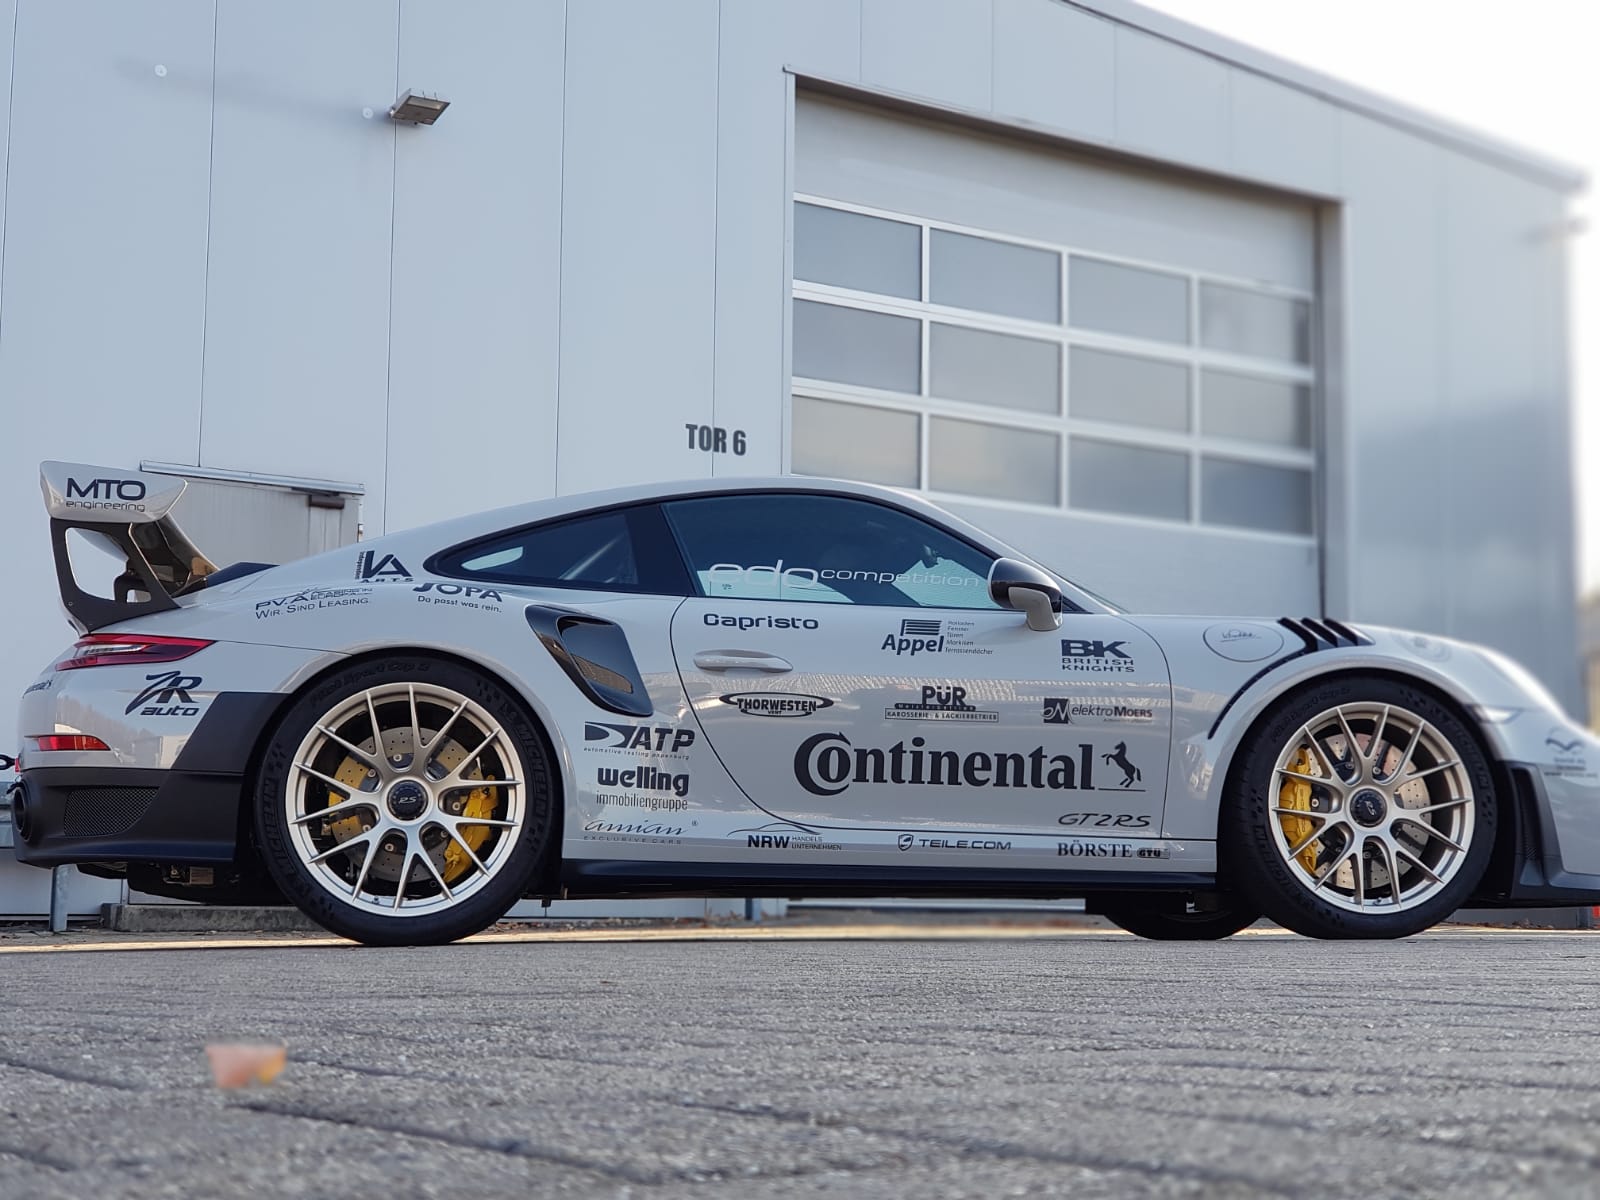 Essen Motor Show - Continental Stand - Porsche 991 GT2RS